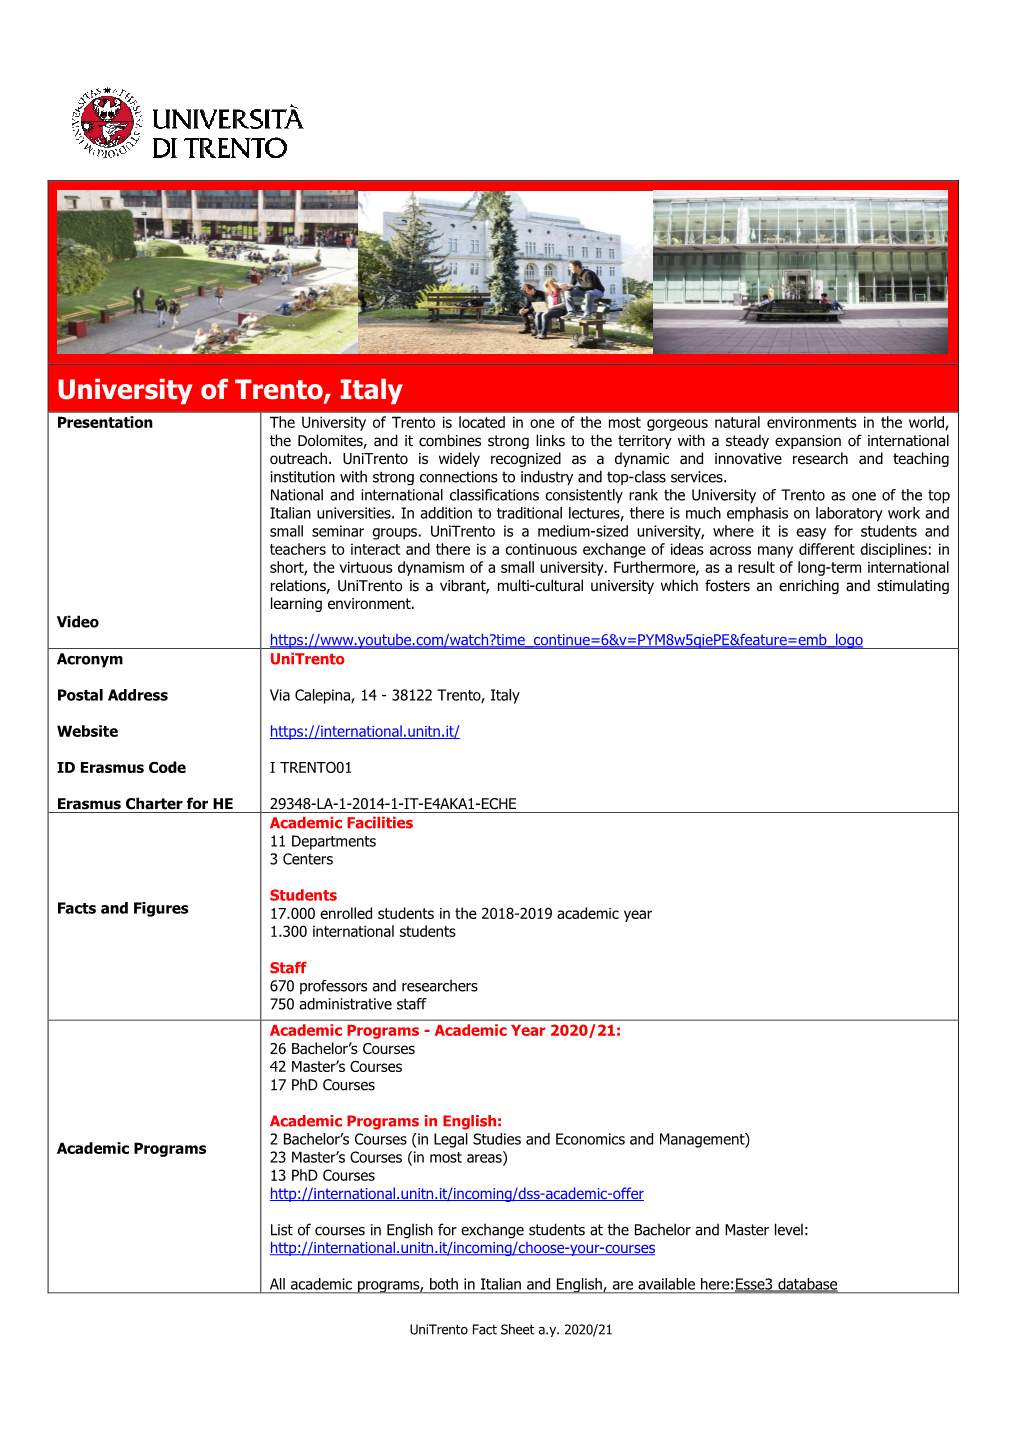 Trento Fact Sheet A.Y